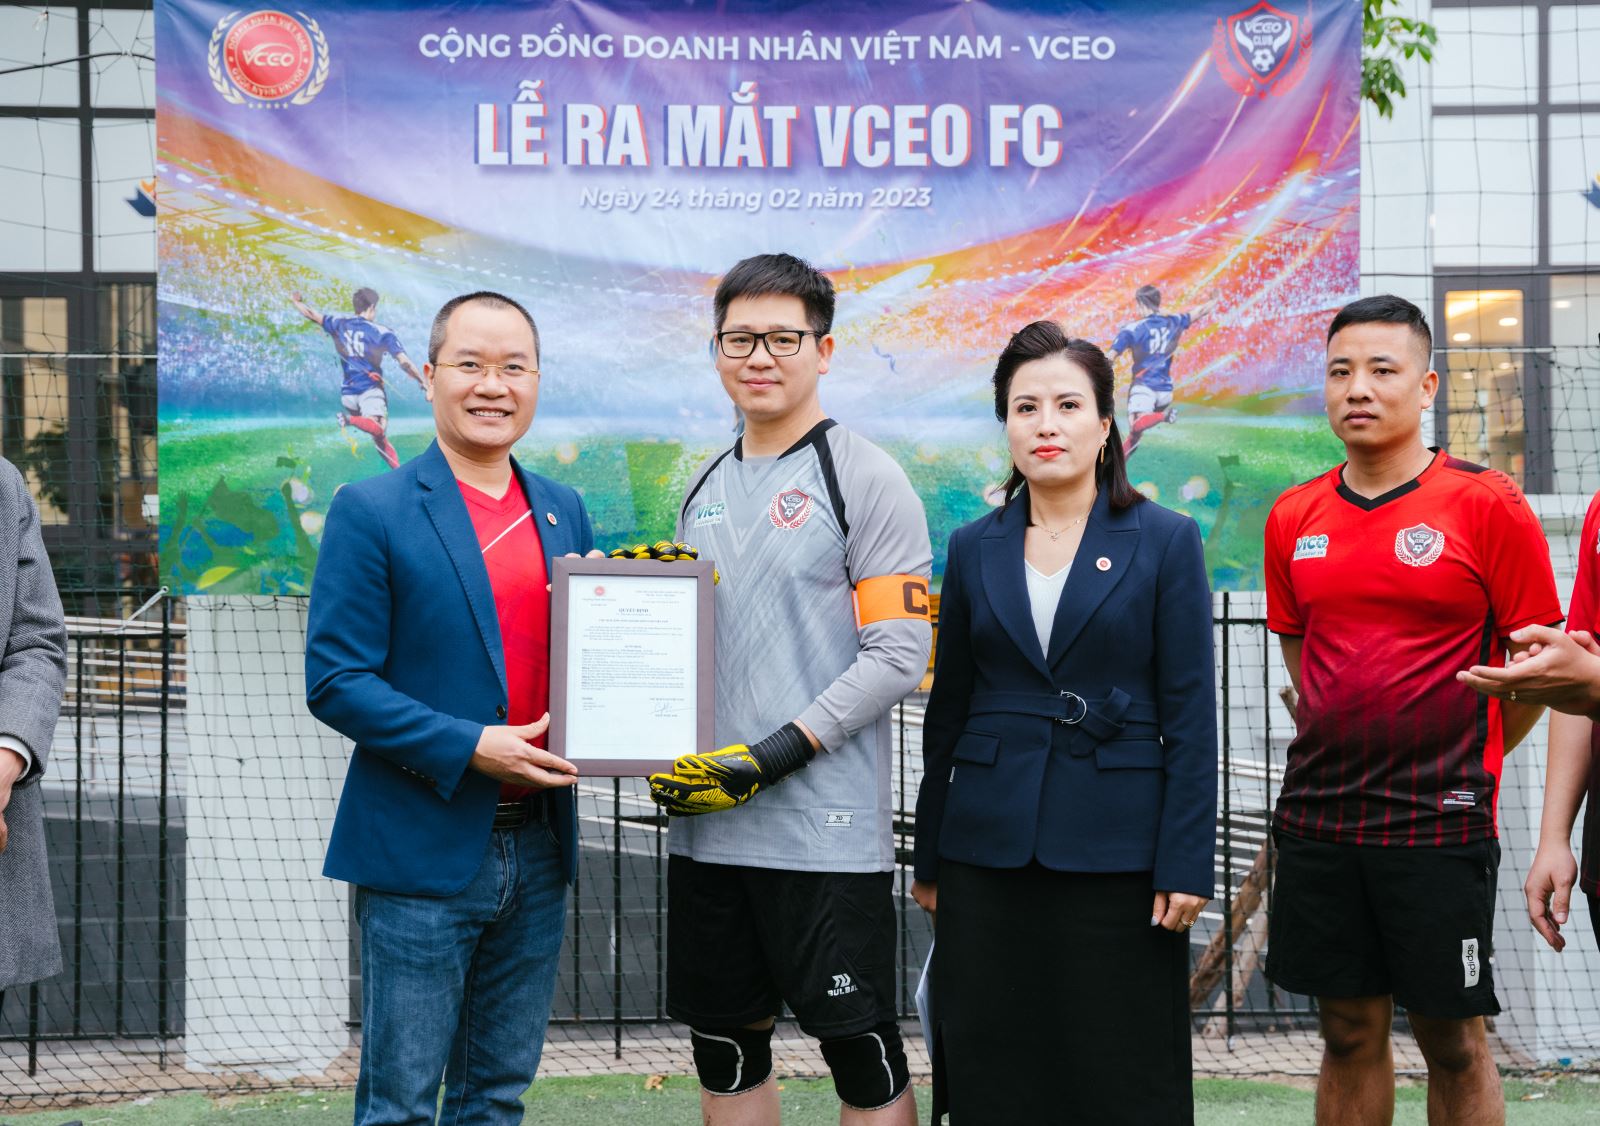 Ông Lê Quang Dương - Giám đốc điều hành của Cộng Đồng Doanh Nhân VCEO lên trao quyết định bổ nhiệm đội trưởng của VCEO FC cho ông Trần Thanh Giang